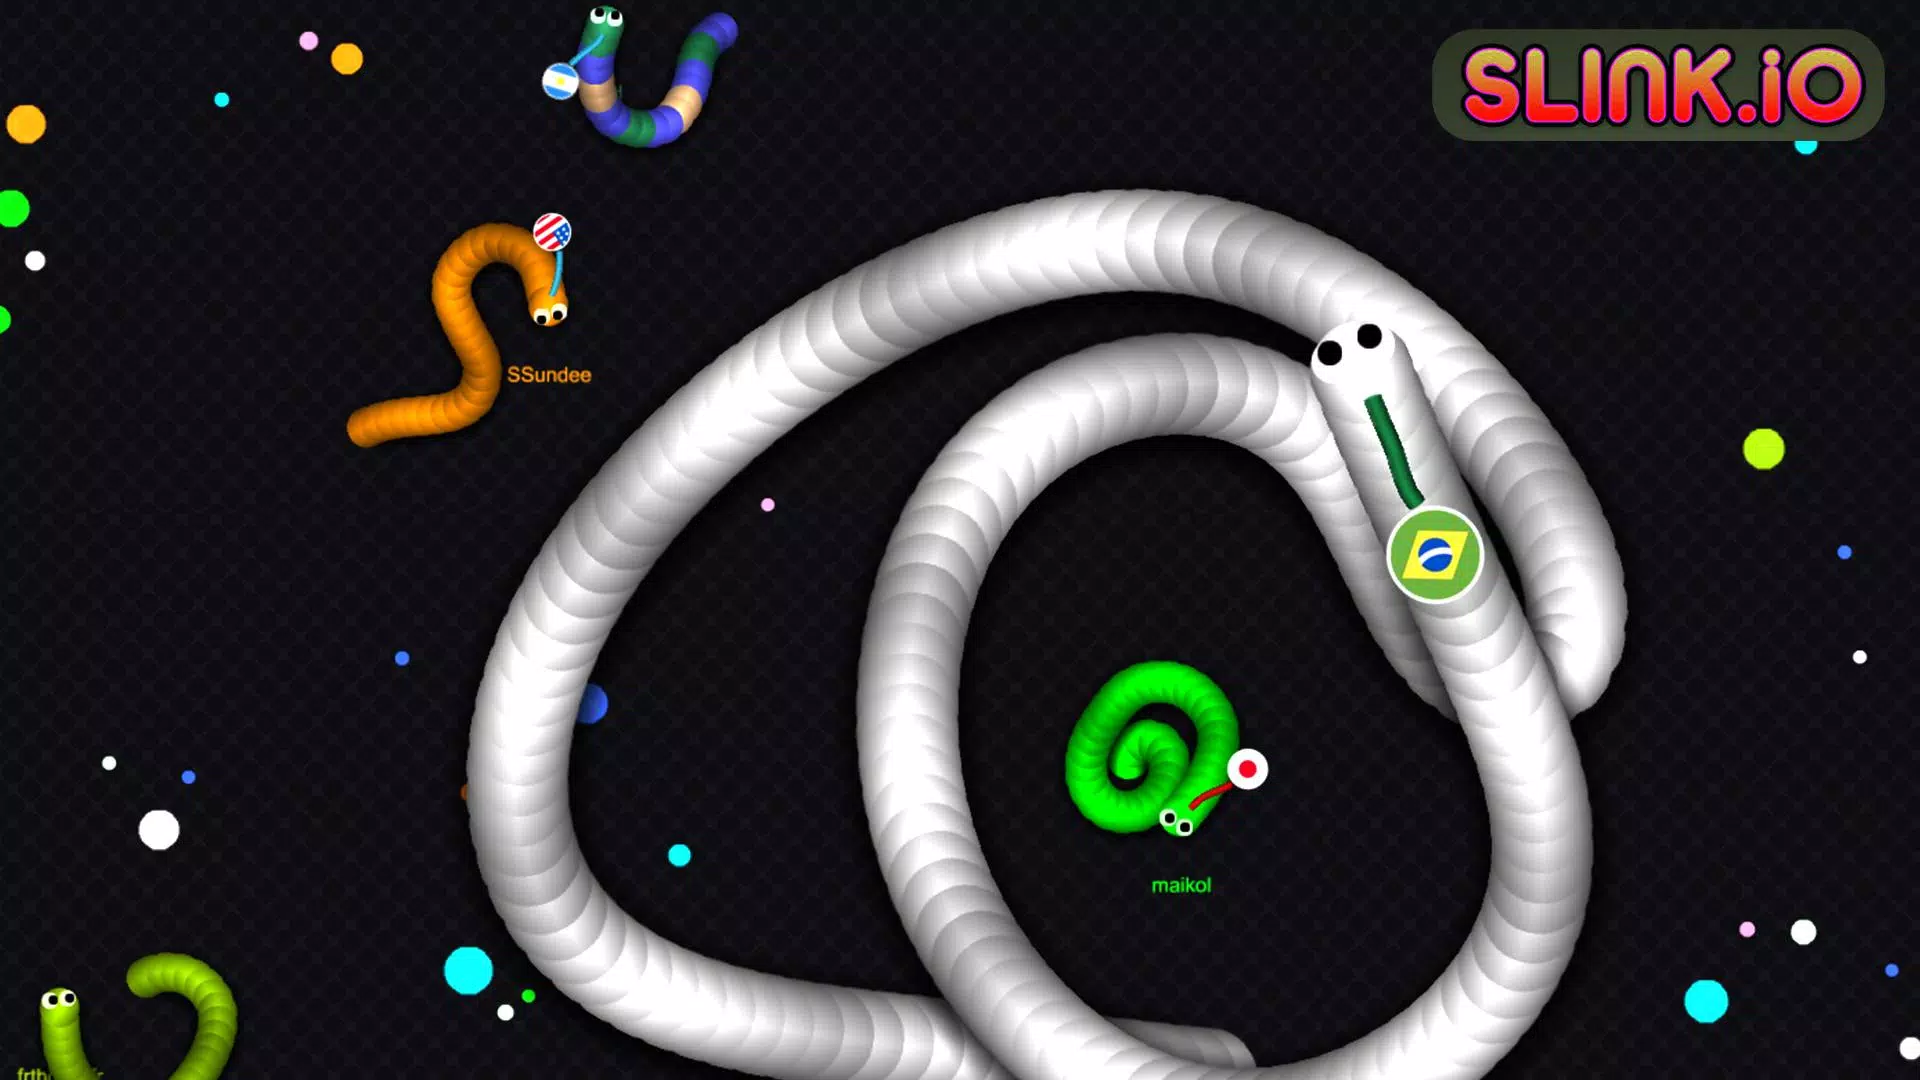 Download do APK de Slink.io - Jogos de Cobra para Android